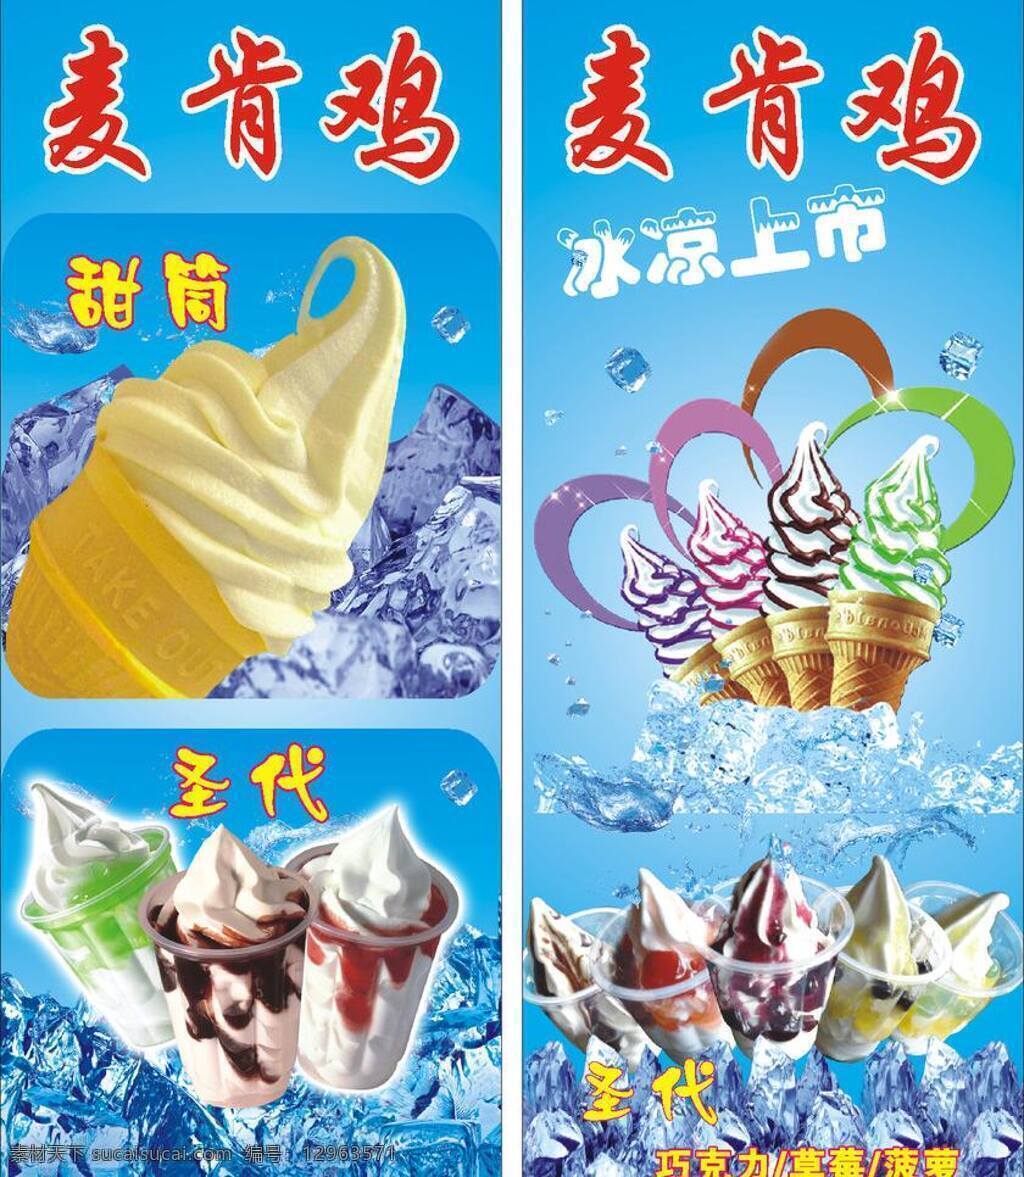 圣代免费下载 冰块 冰凉 冰淇淋 菠萝 草莓 广告牌 蓝底 冷饮 圣代 冰 五彩冰淇淋 巧克力 甜筒 麦肯鸡 矢量 矢量图